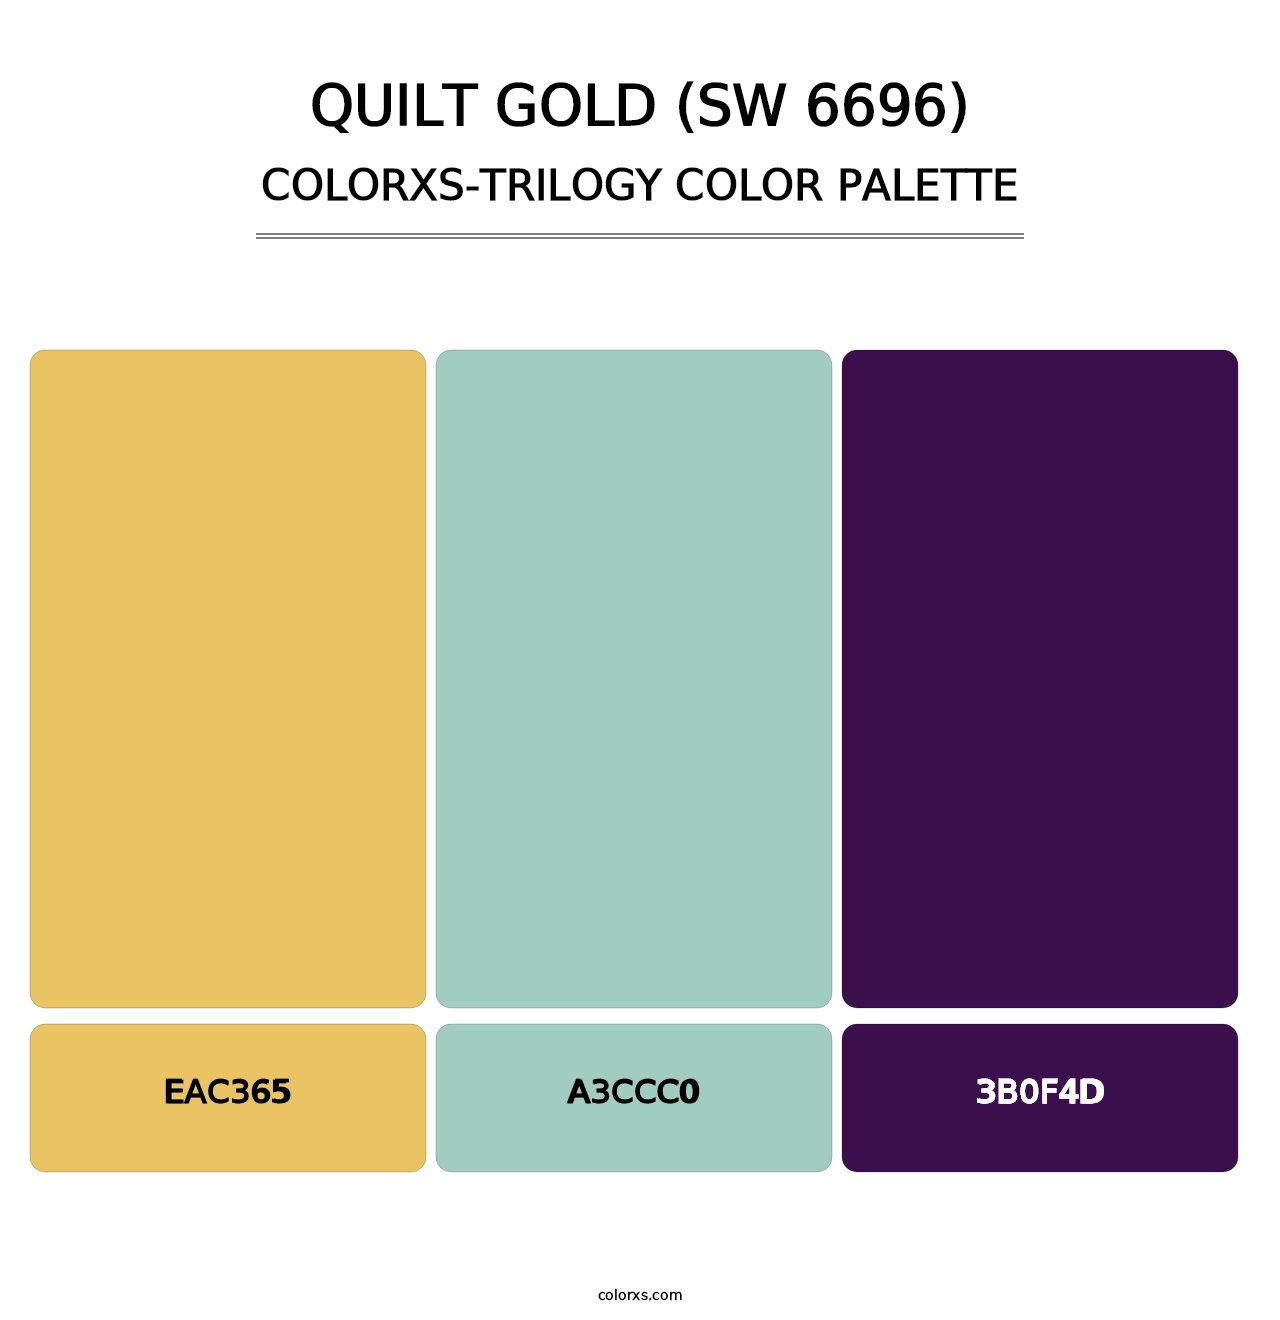 Quilt Gold (SW 6696) - Colorxs Trilogy Palette